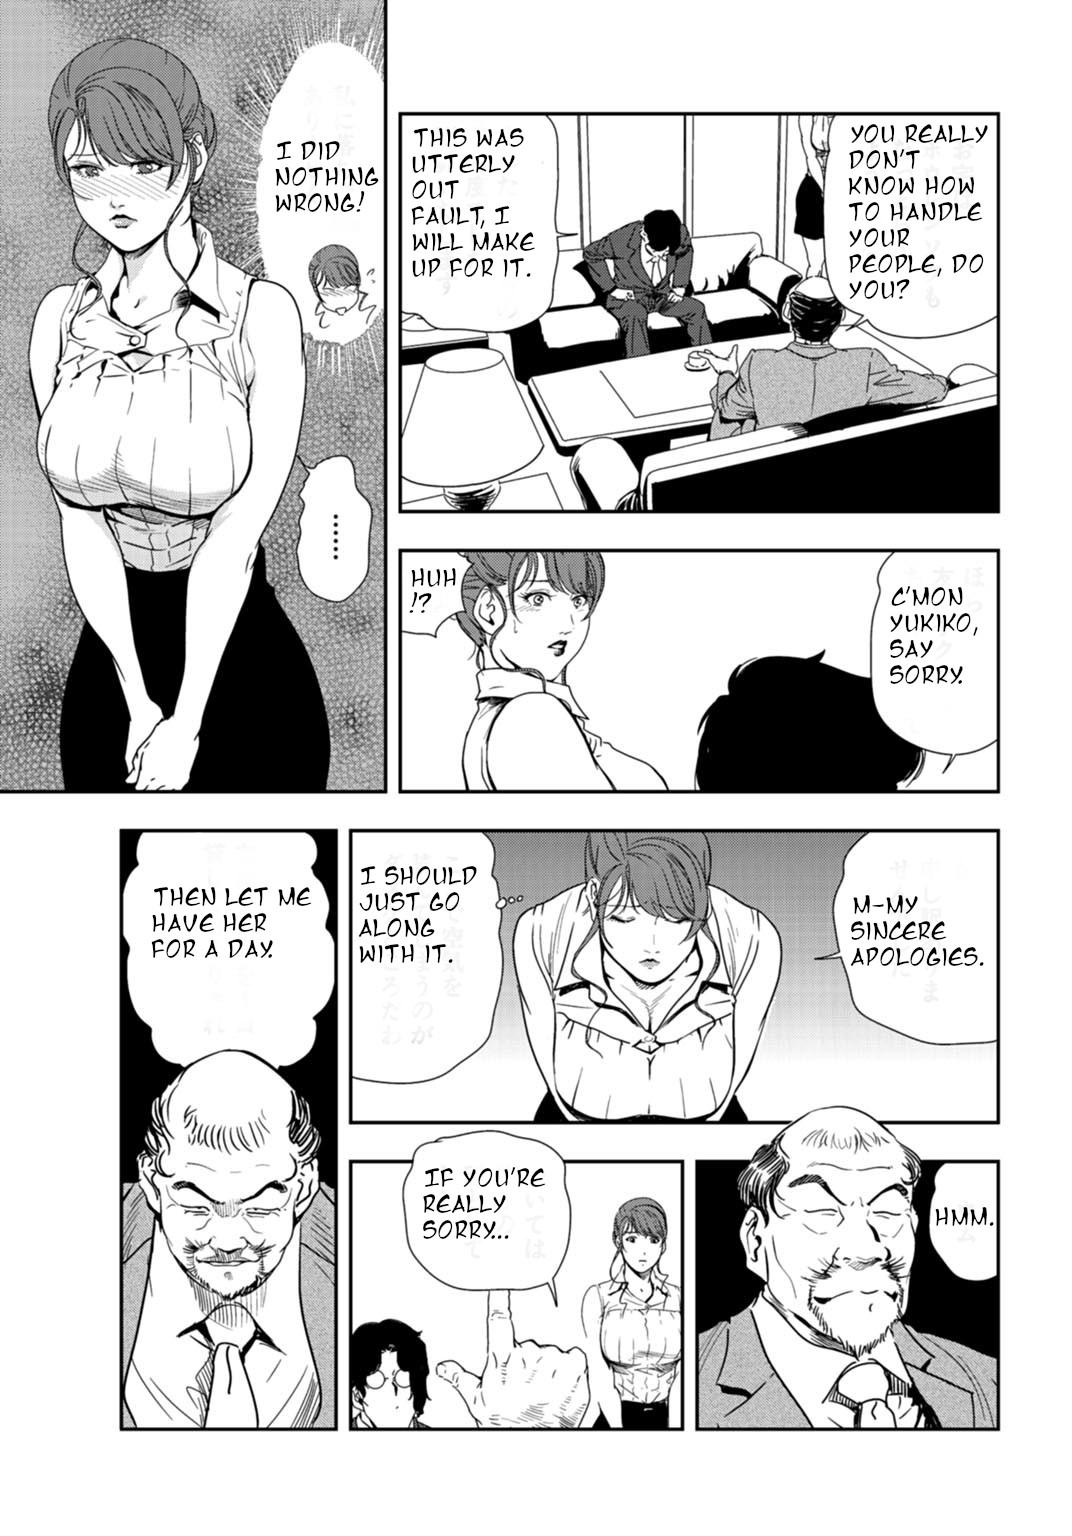 Negra nikuhisyo yukiko 24 Thuylinh - Page 8